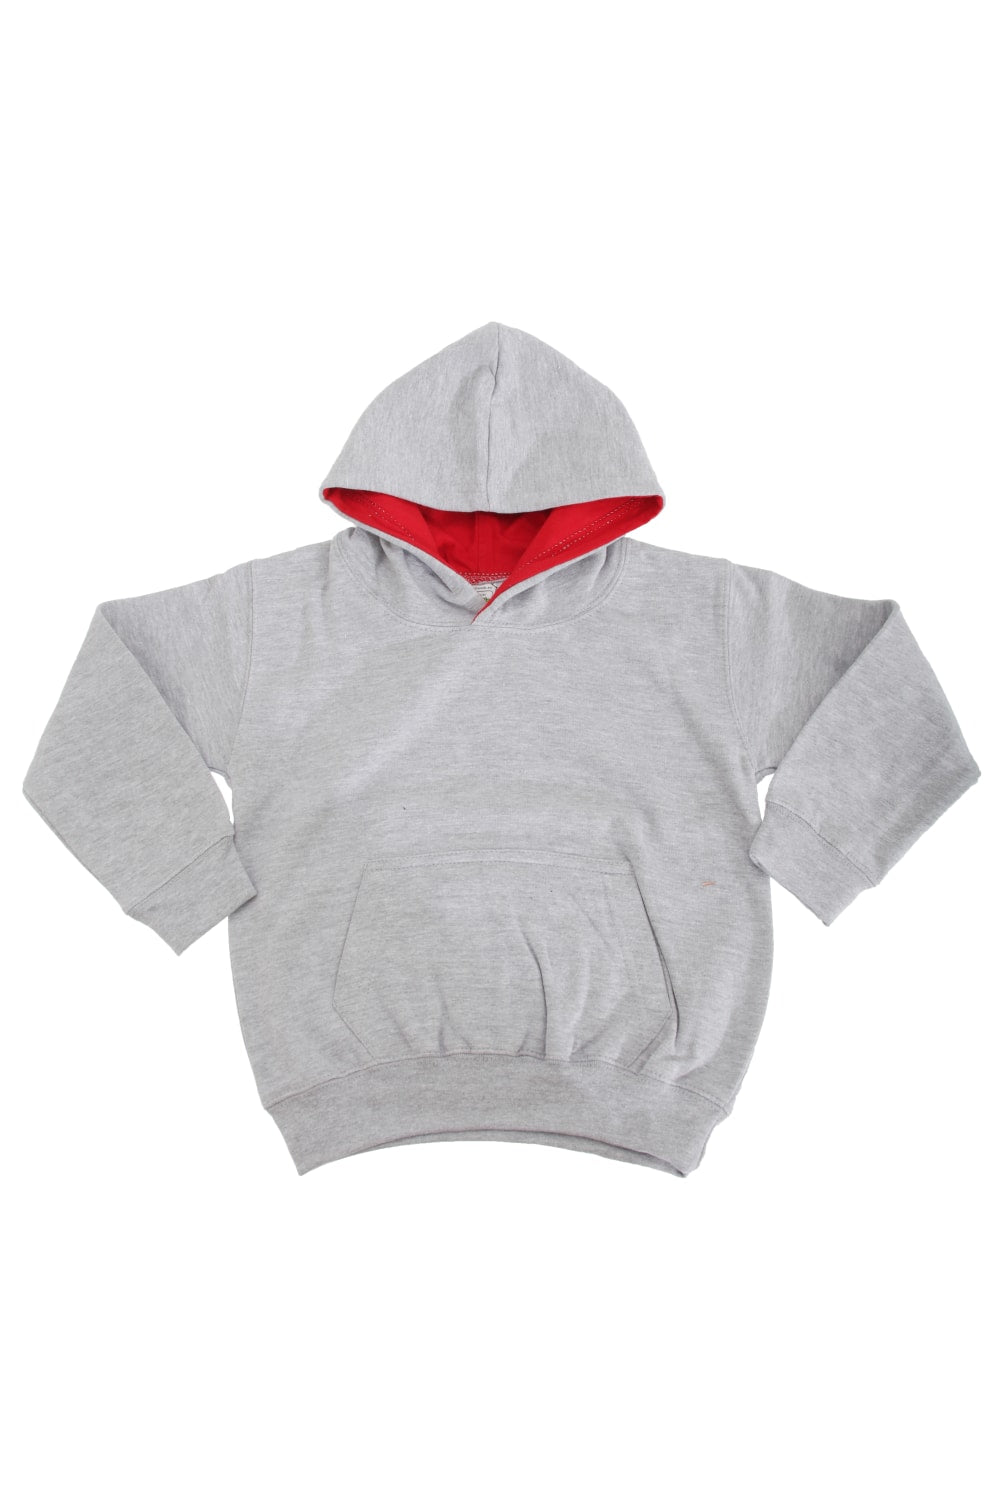 Awdis Kids Varsity Hooded Sweatshirt/Hoodie/Schoolwear (Heather Grey/Fire Red)